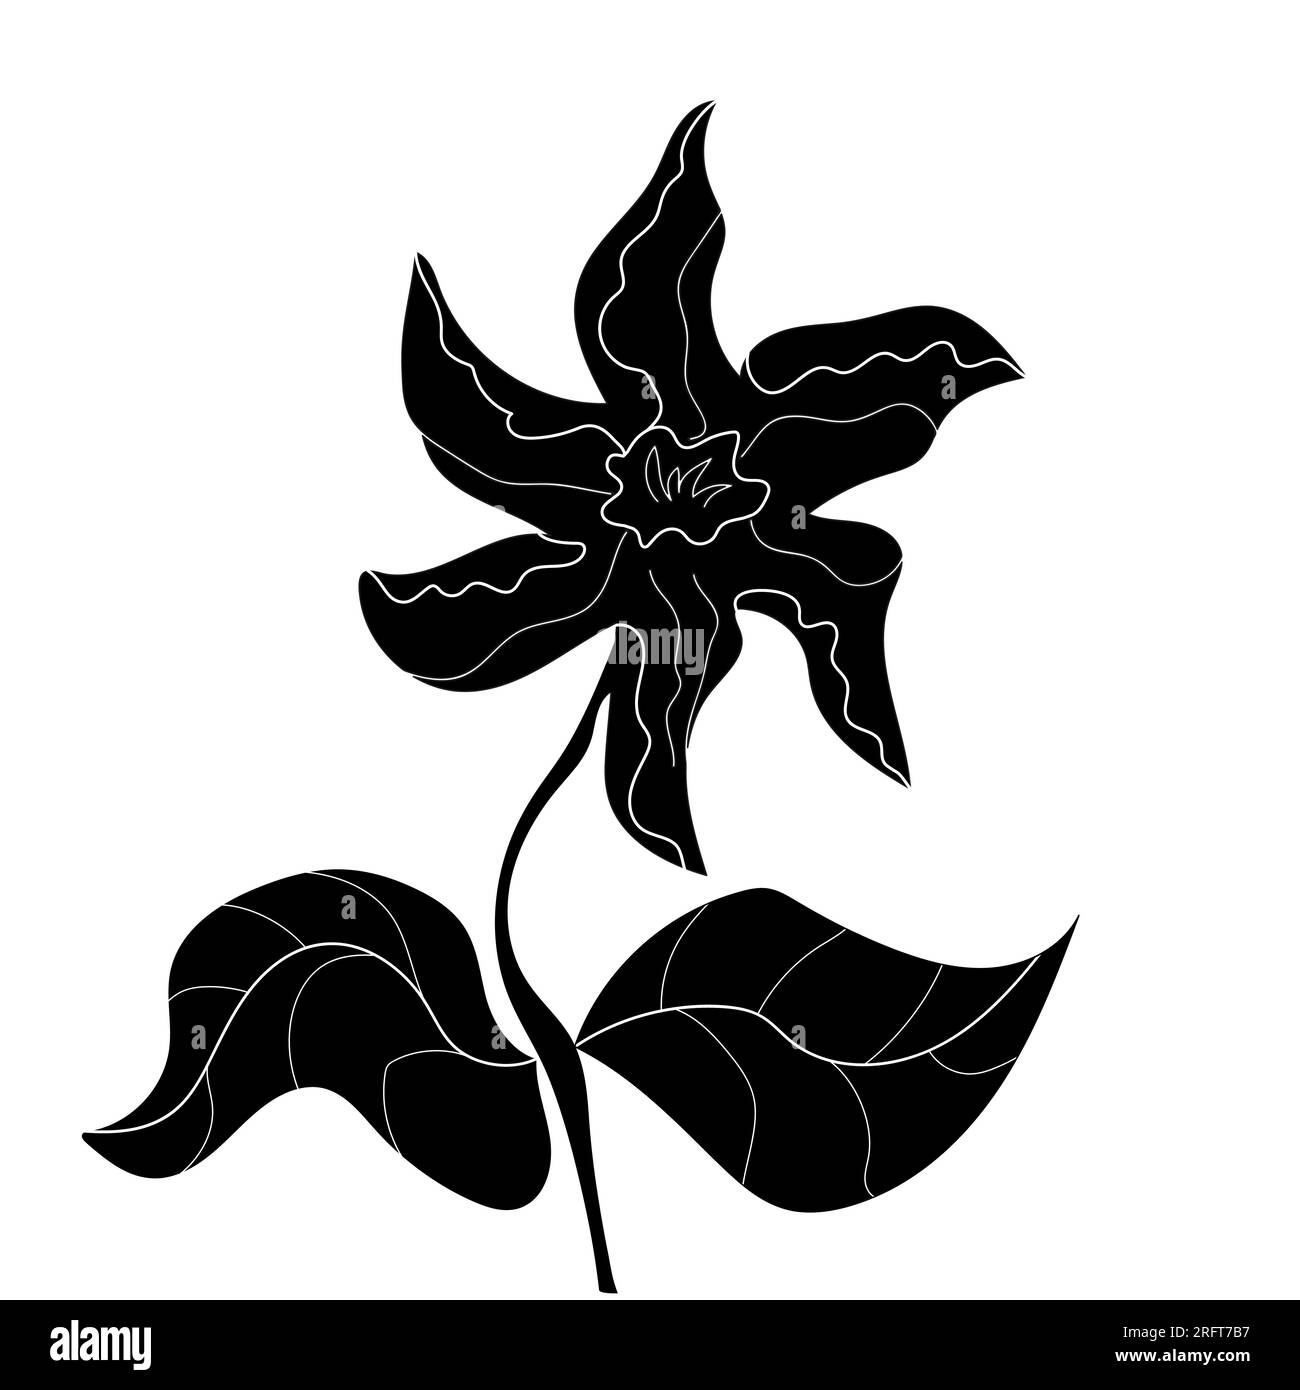 Une fleur stylisée fleurie sur une tige avec des feuilles. Dessin vectoriel noir et blanc, fond blanc. Vecteur logo fleur noir et blanc, bannière, décor graphique Illustration de Vecteur